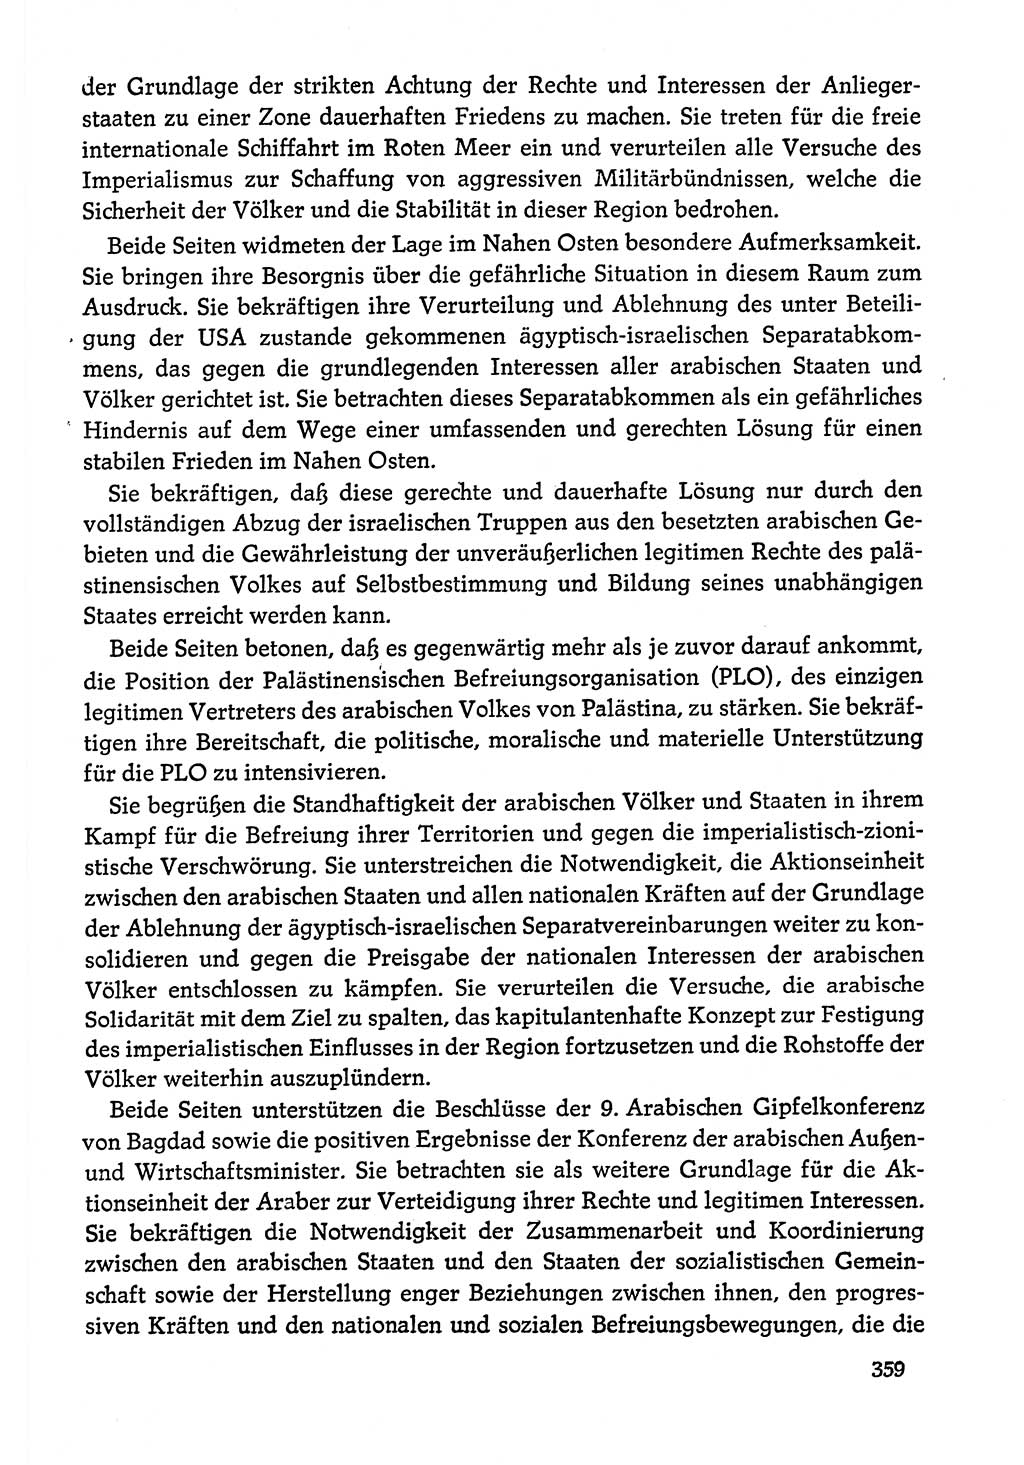 Dokumente der Sozialistischen Einheitspartei Deutschlands (SED) [Deutsche Demokratische Republik (DDR)] 1978-1979, Seite 359 (Dok. SED DDR 1978-1979, S. 359)